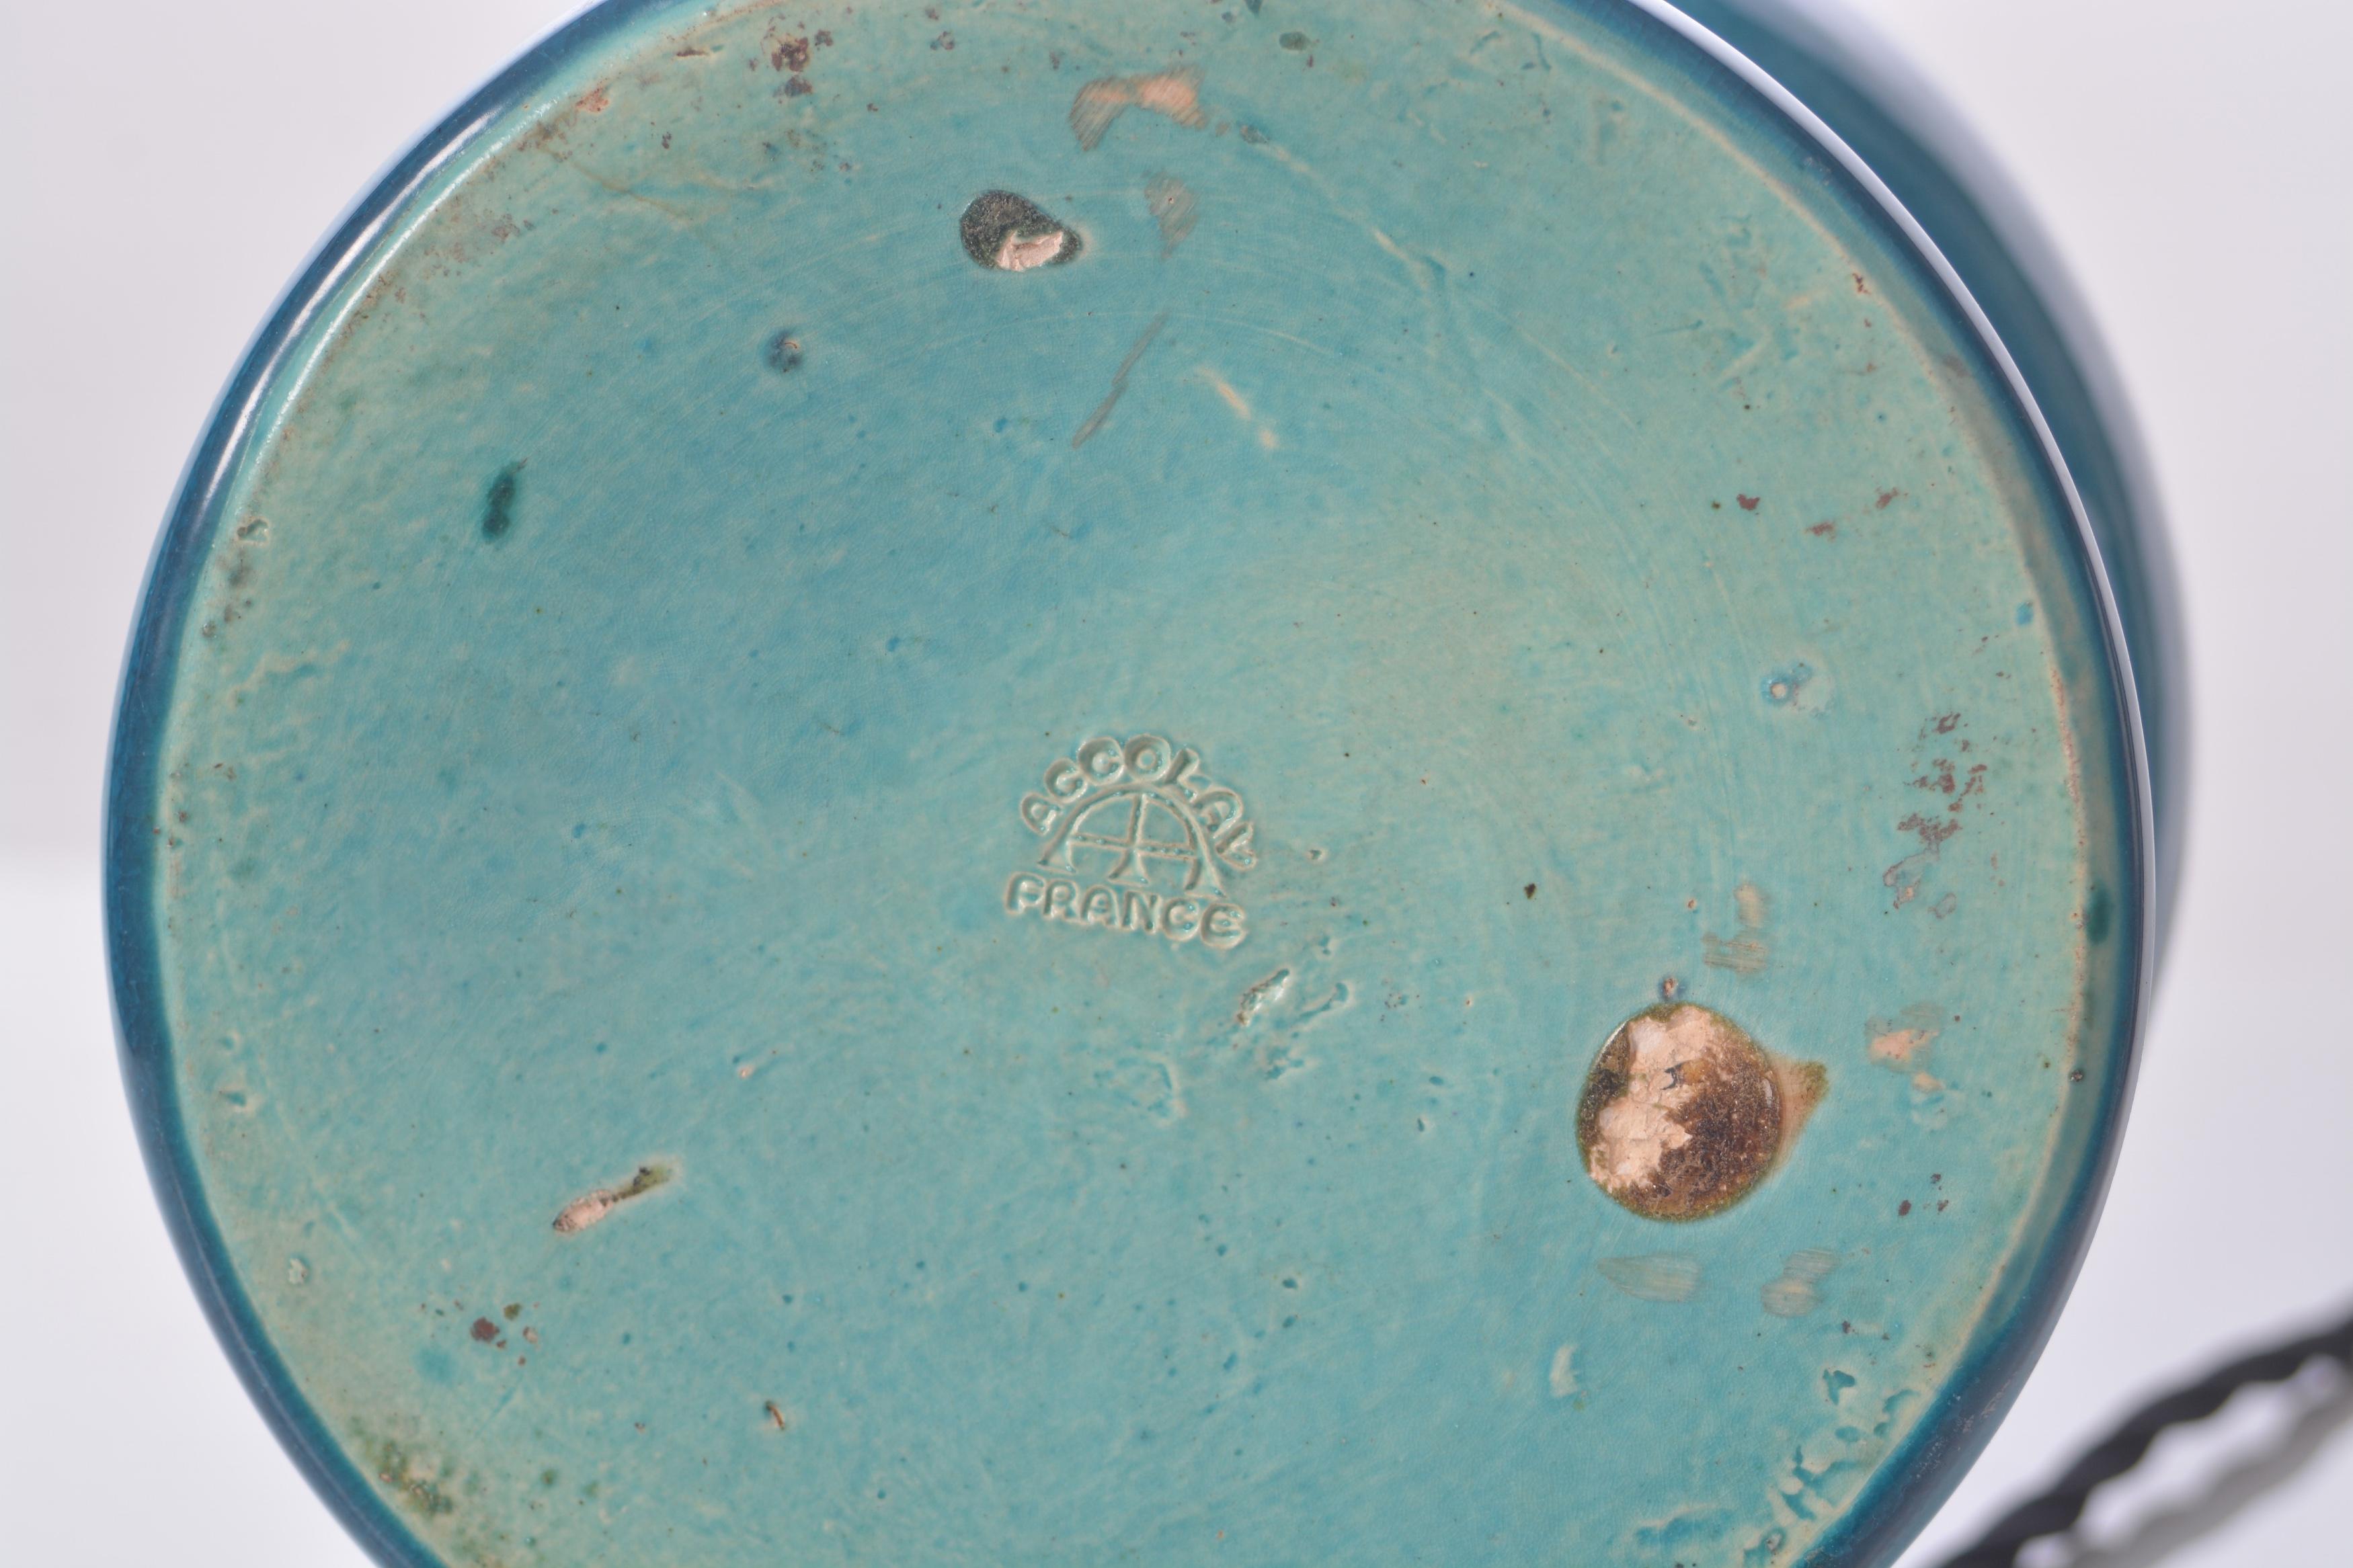 Une lampe de table en céramique turquoise par Accolay. Estampillé sur la face inférieure.
France, fin des années 1950. Excellent état, recâblé en câble noir tressé, reposé en PAT et fourni avec un abat-jour en dupion de soie blanc cassé.